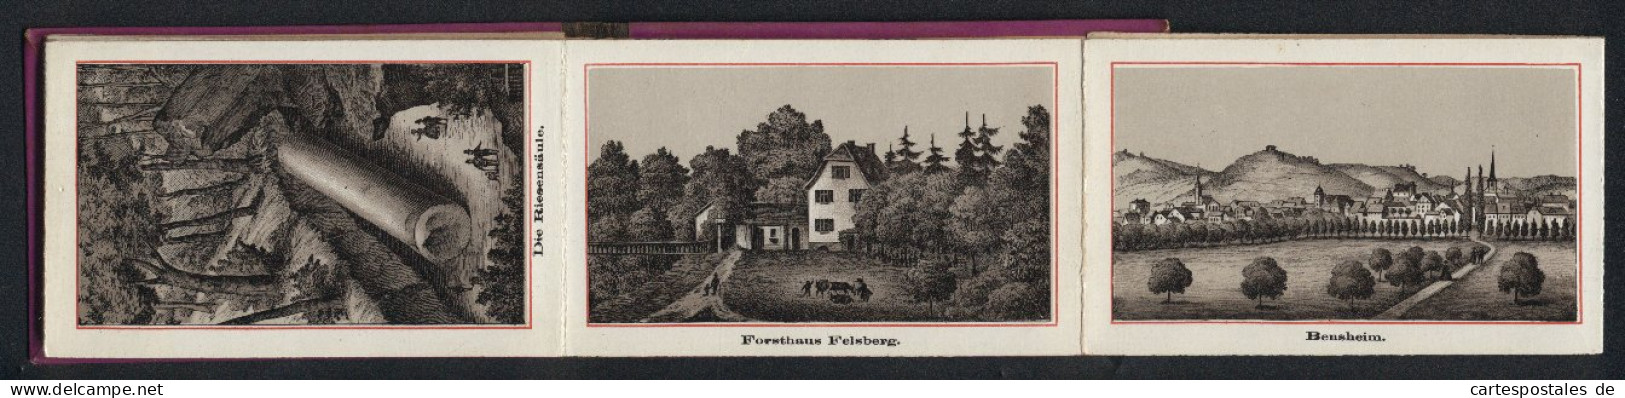 Leporello-Album Bergstrasse Mit 12 Lithographie-Ansichten, Bensheim, Heppenheim, Forsthaus Felsberg, Riesensäule, Sch  - Lithographies